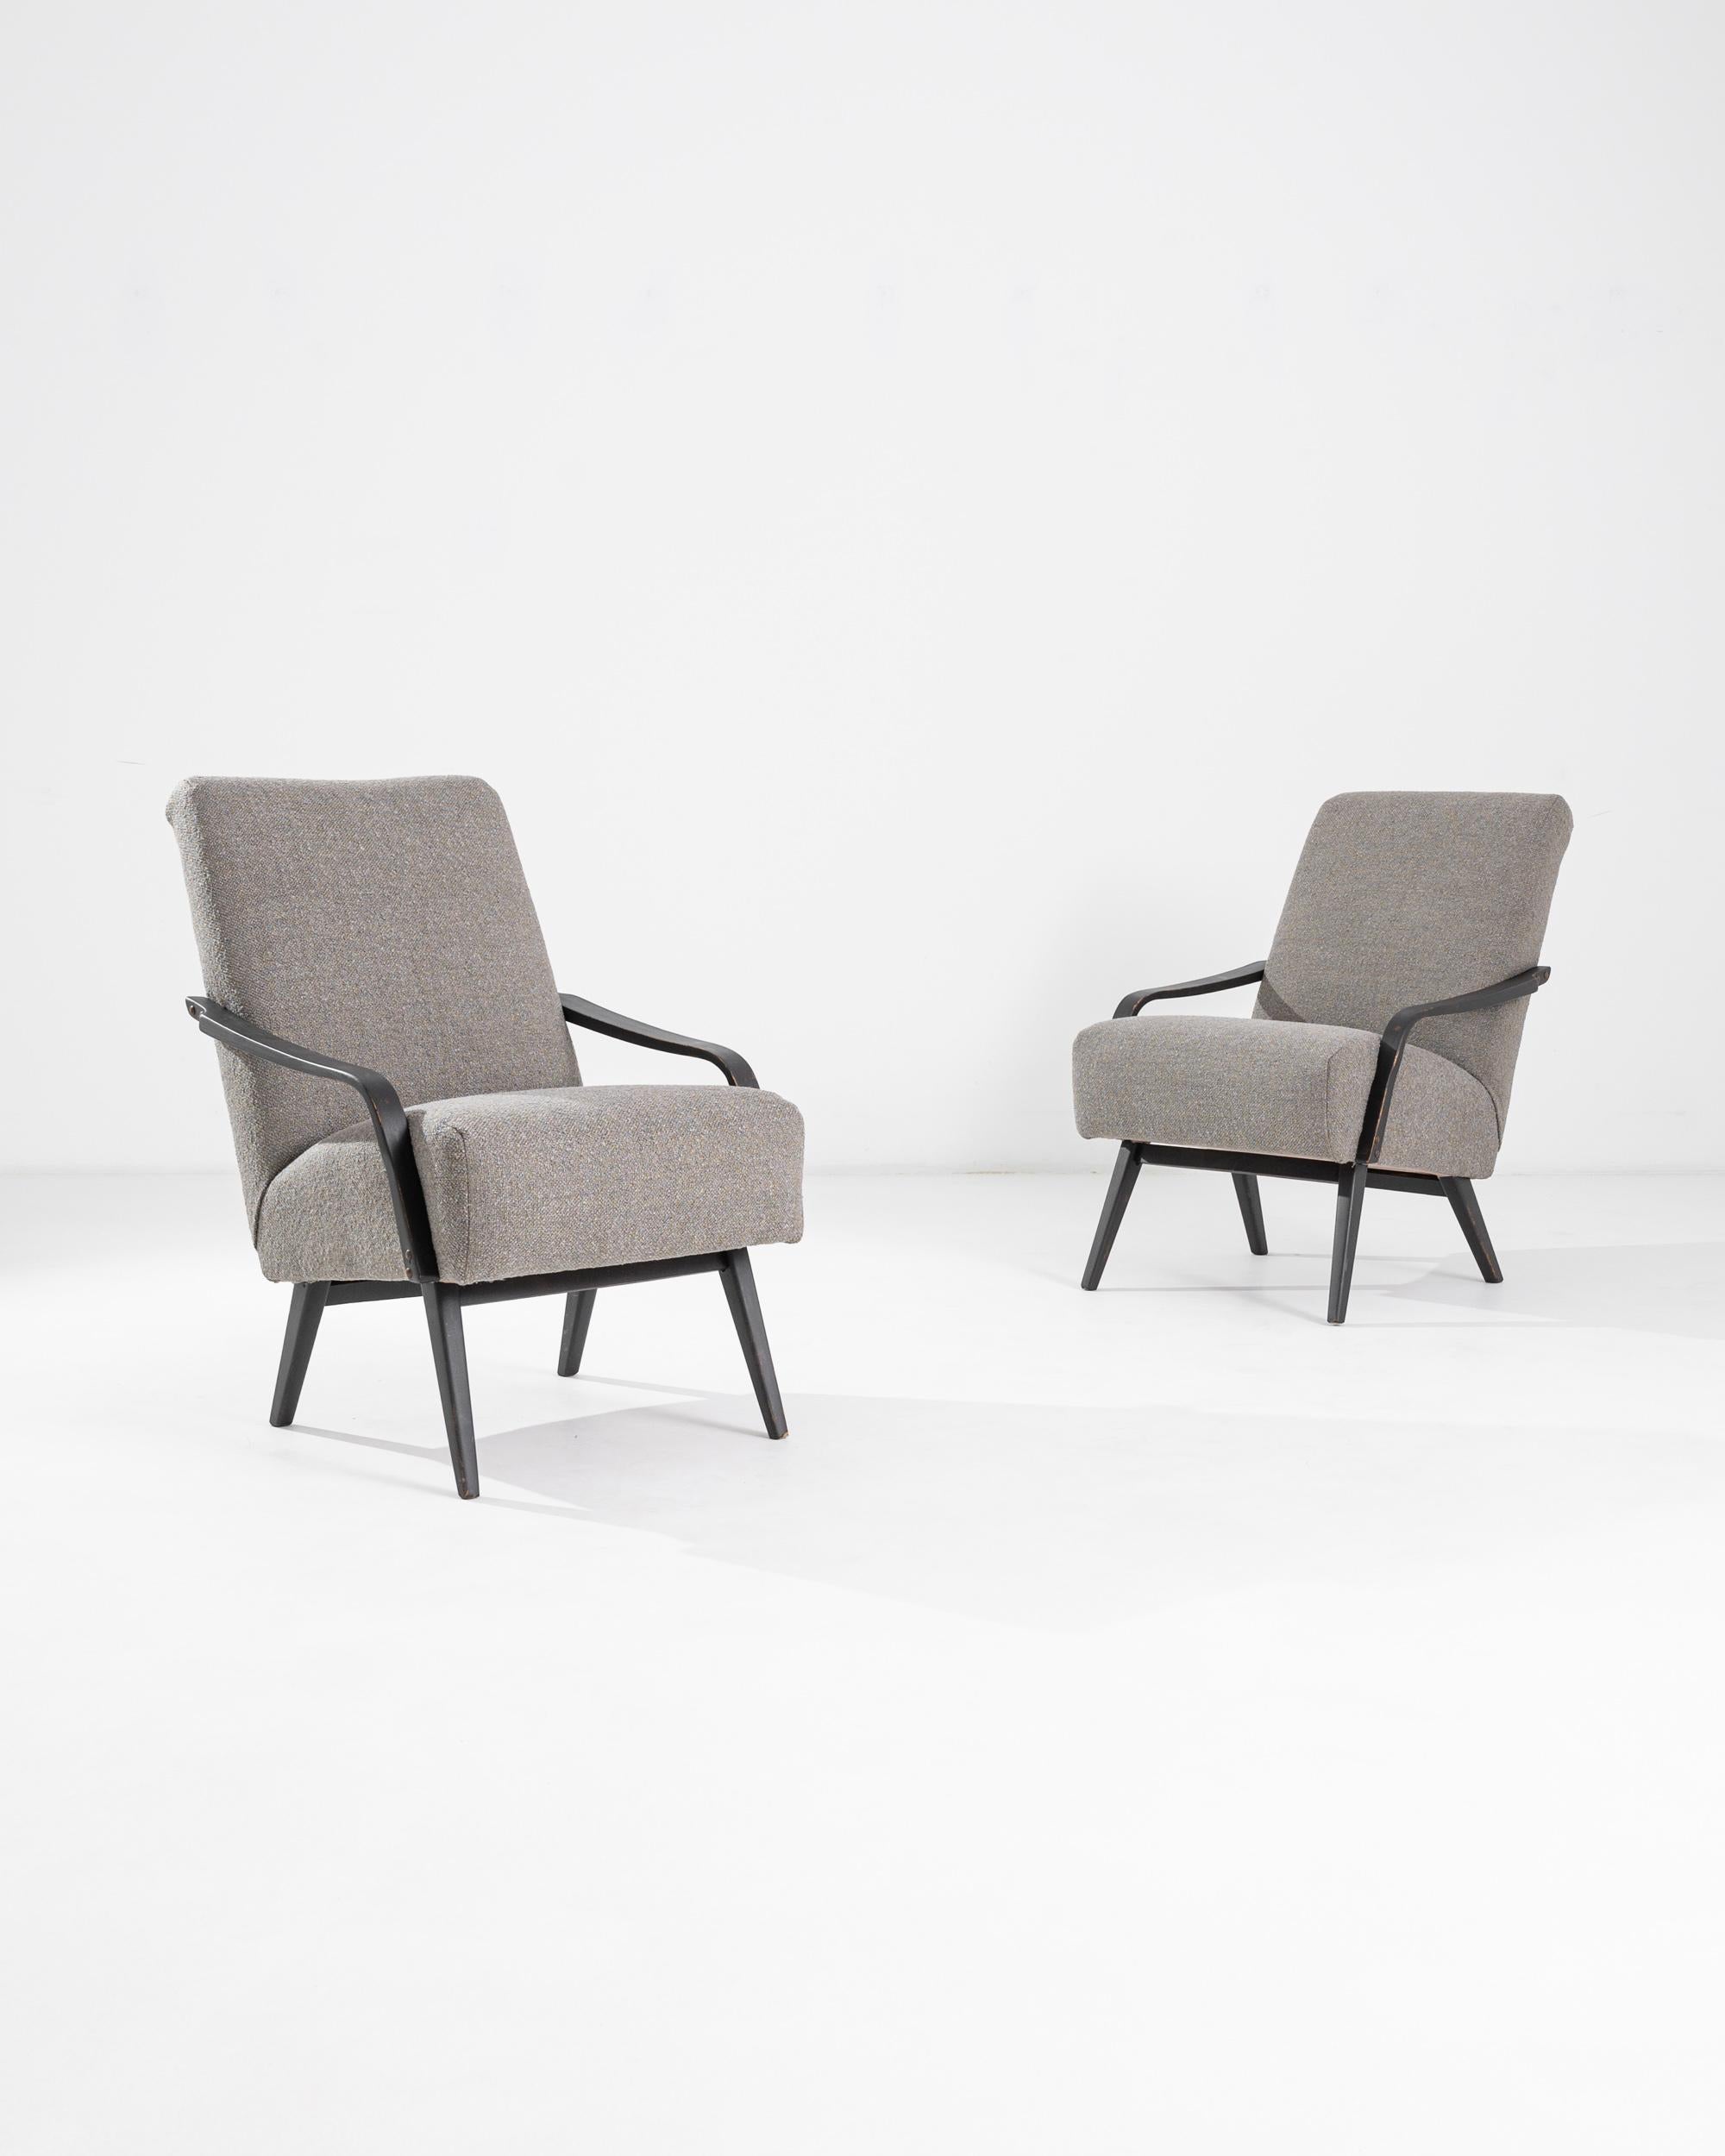 Cette magnifique paire de fauteuils Mid-Century Modern a été fabriquée en République tchèque par le célèbre fabricant de meubles TON. Le design est attribué à J. Smidek. Basse et confortable, l'assise profonde tapissée de boucles souples est